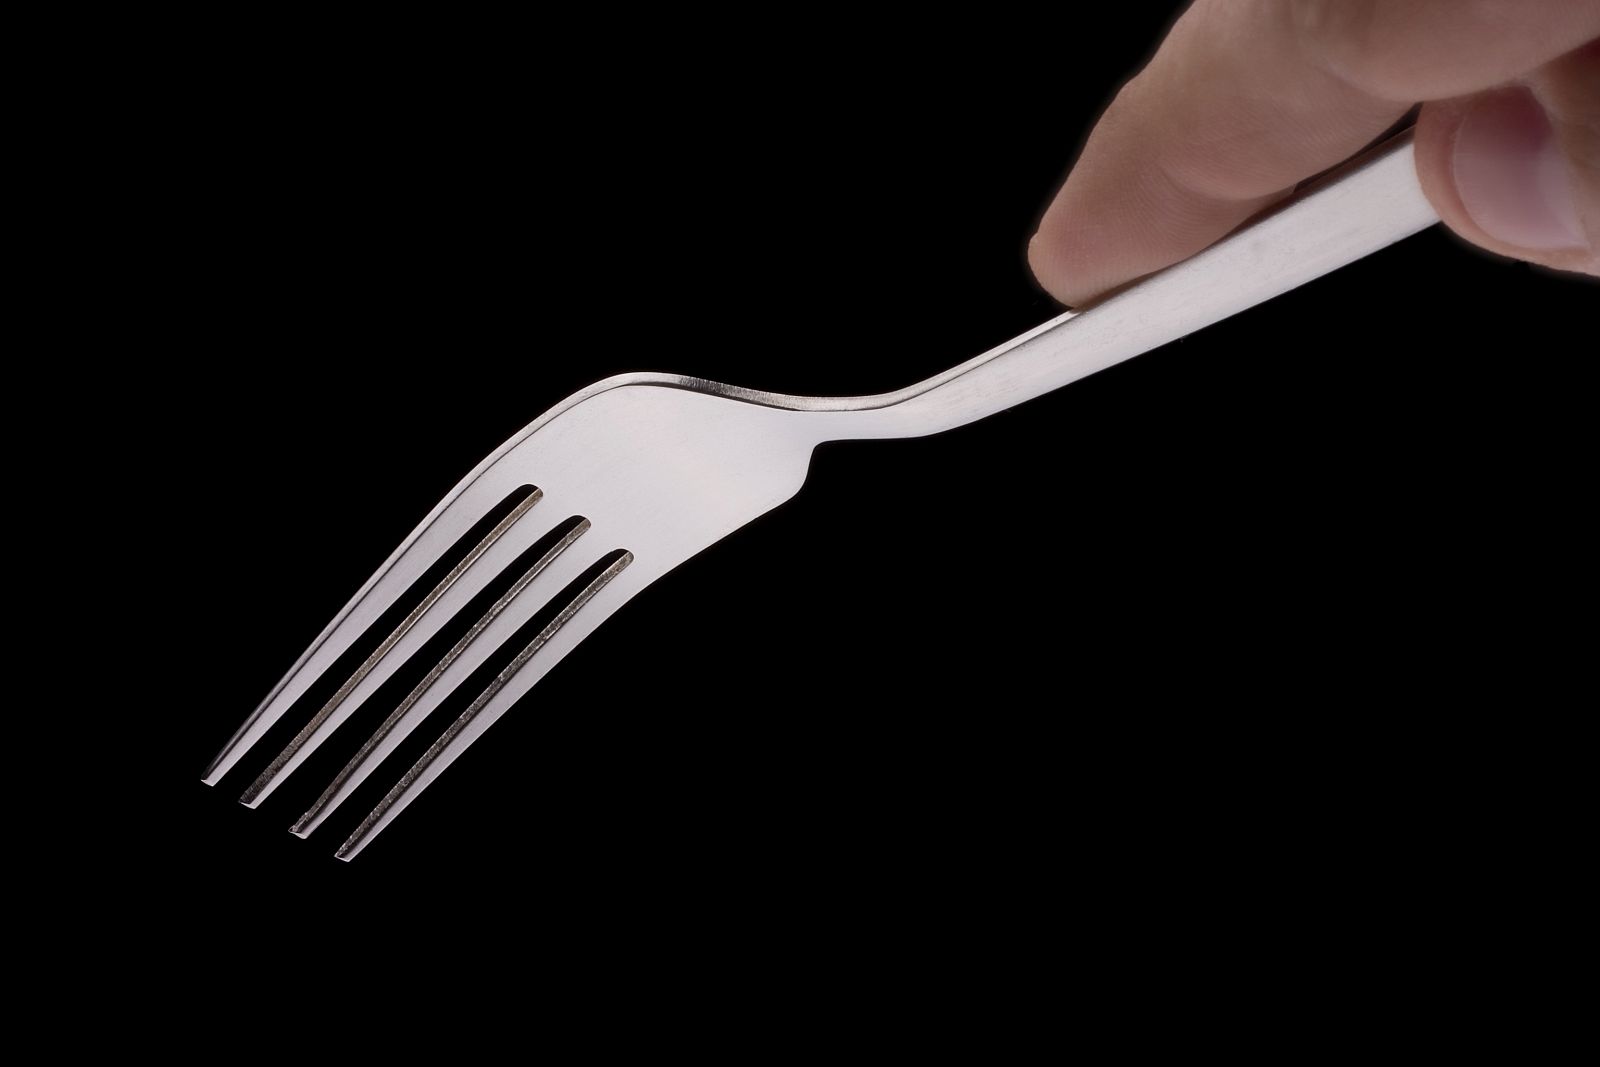 El sonido de un tenedor al rascar la superficie de un plato nos produce dentera